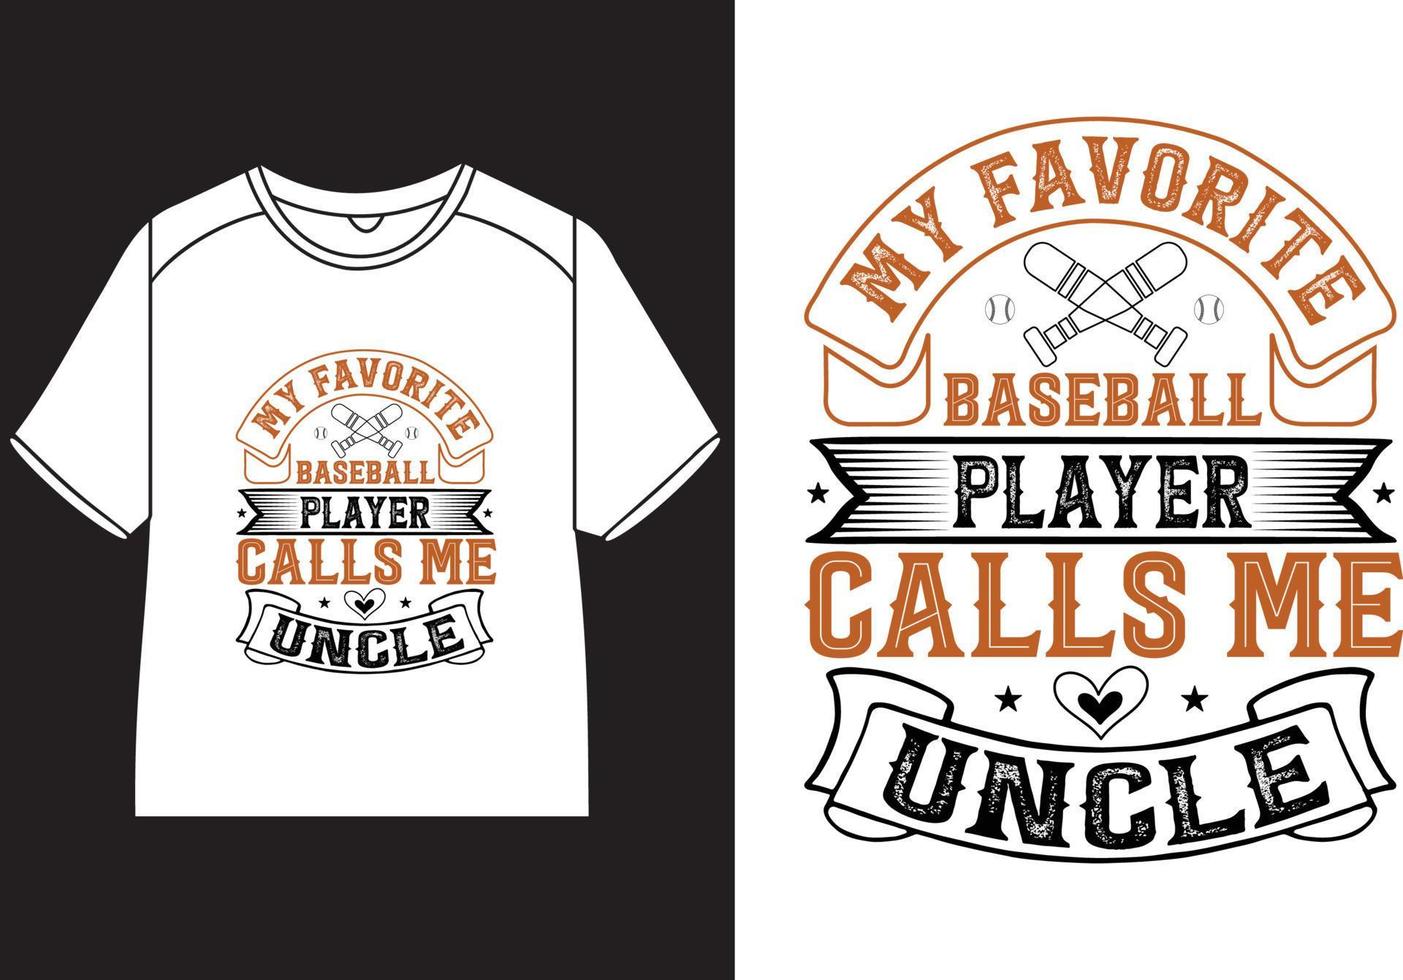 mio preferito baseball giocatore chiamate me zio maglietta design vettore